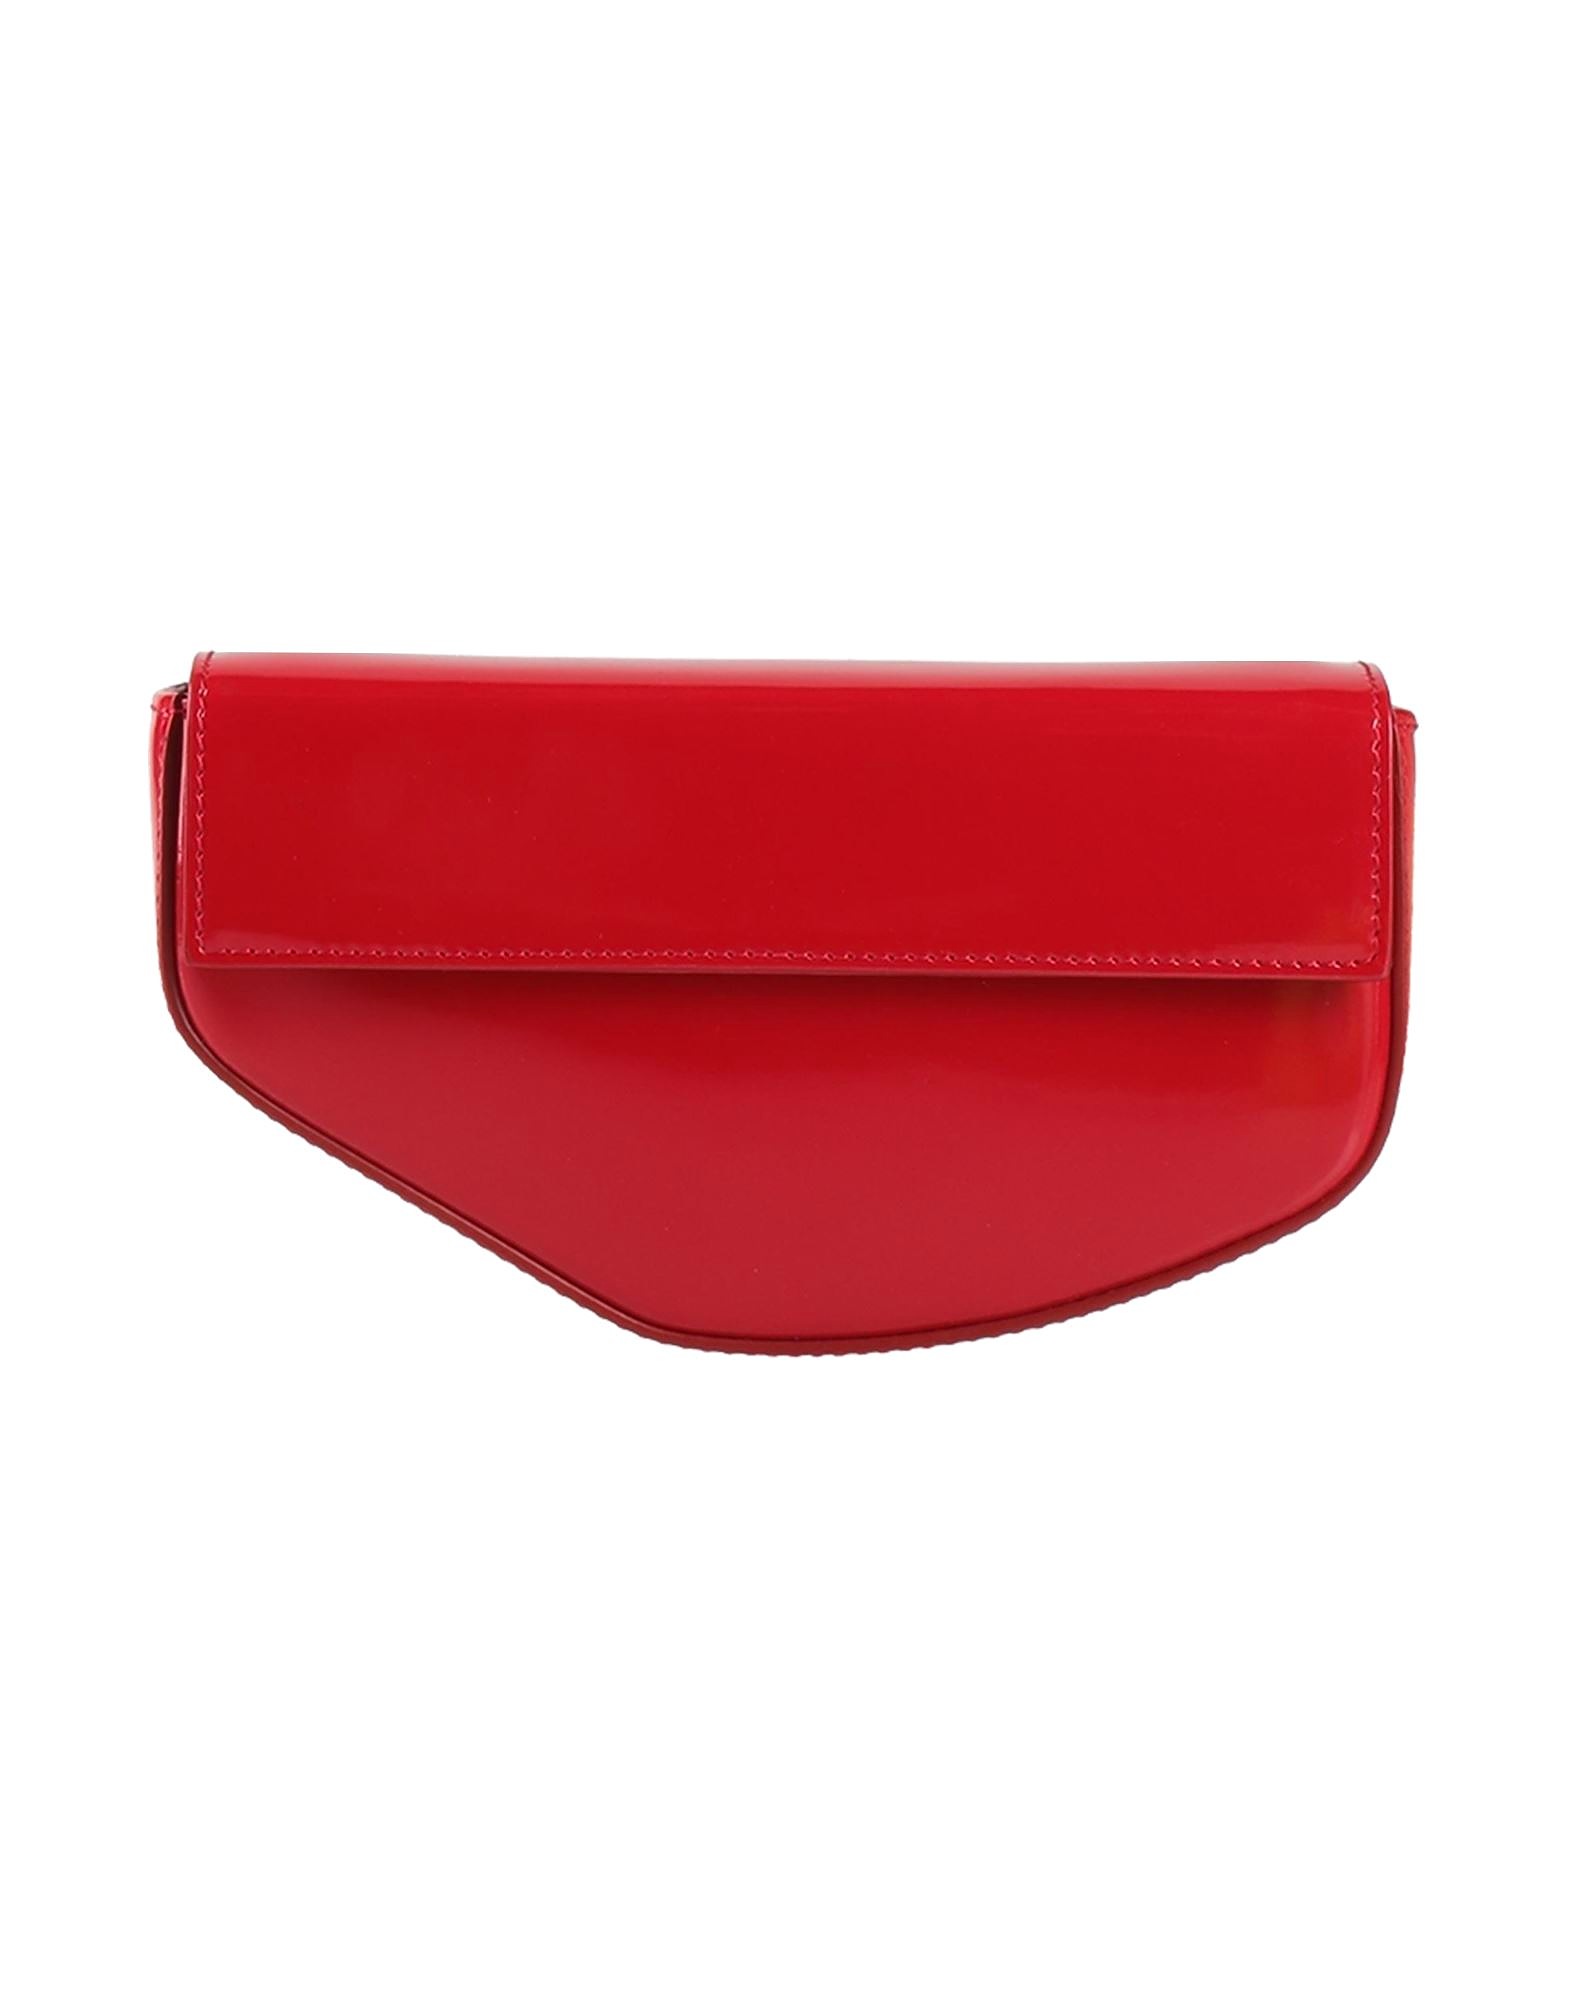 Сумка клатч Dolce & Gabbana, красный сумка клатч мужская с заклепками с плечевым ремнем